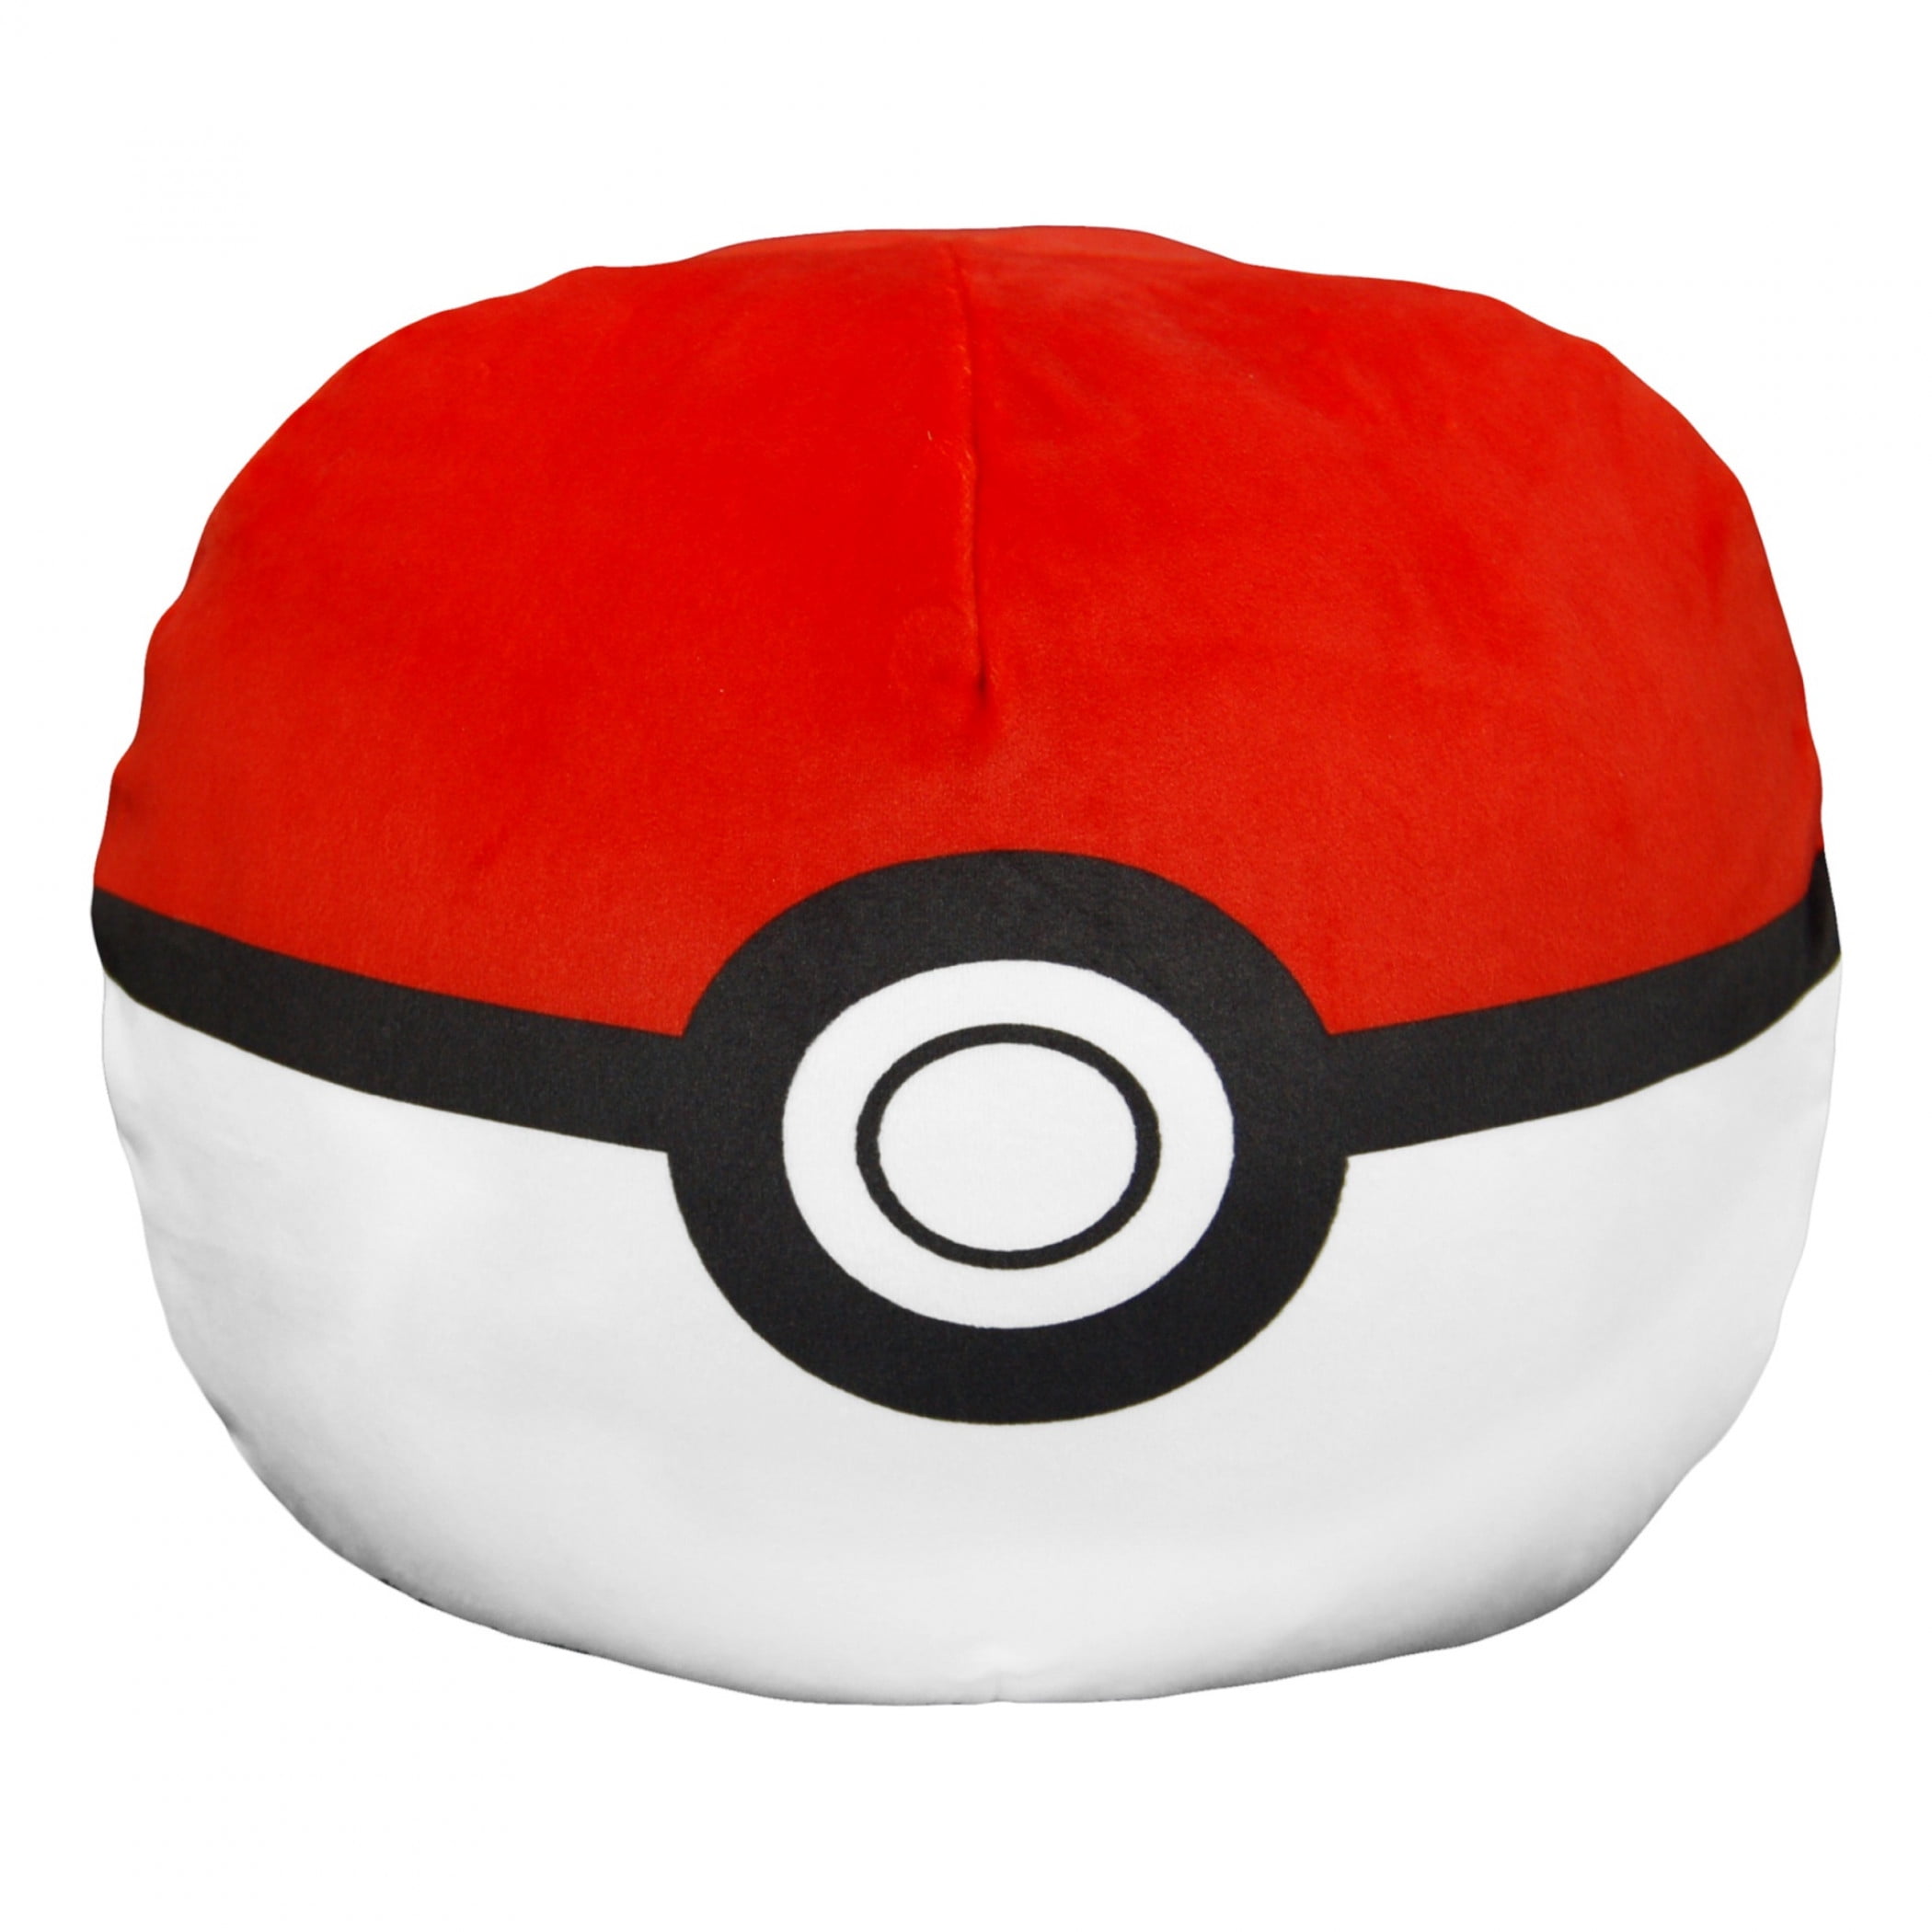 Kanto, Pokémon Pillows